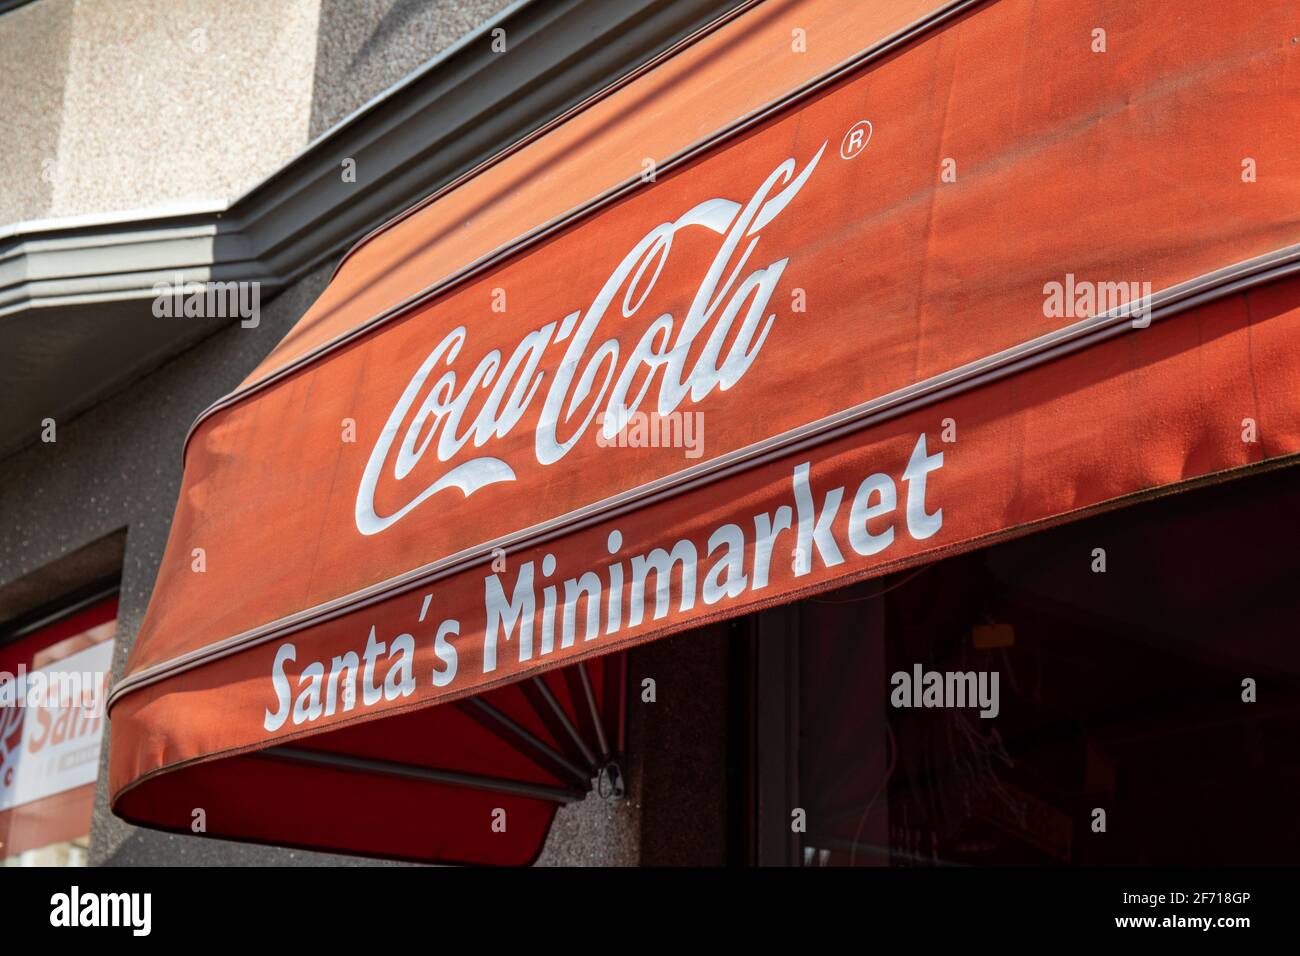 Santa's Minimarket of souvenir Shop marque publicitaire Coca-Cola à côté de l'attraction touristique de l'église de Temppelinaukio à Helsinki, Finlande Banque D'Images